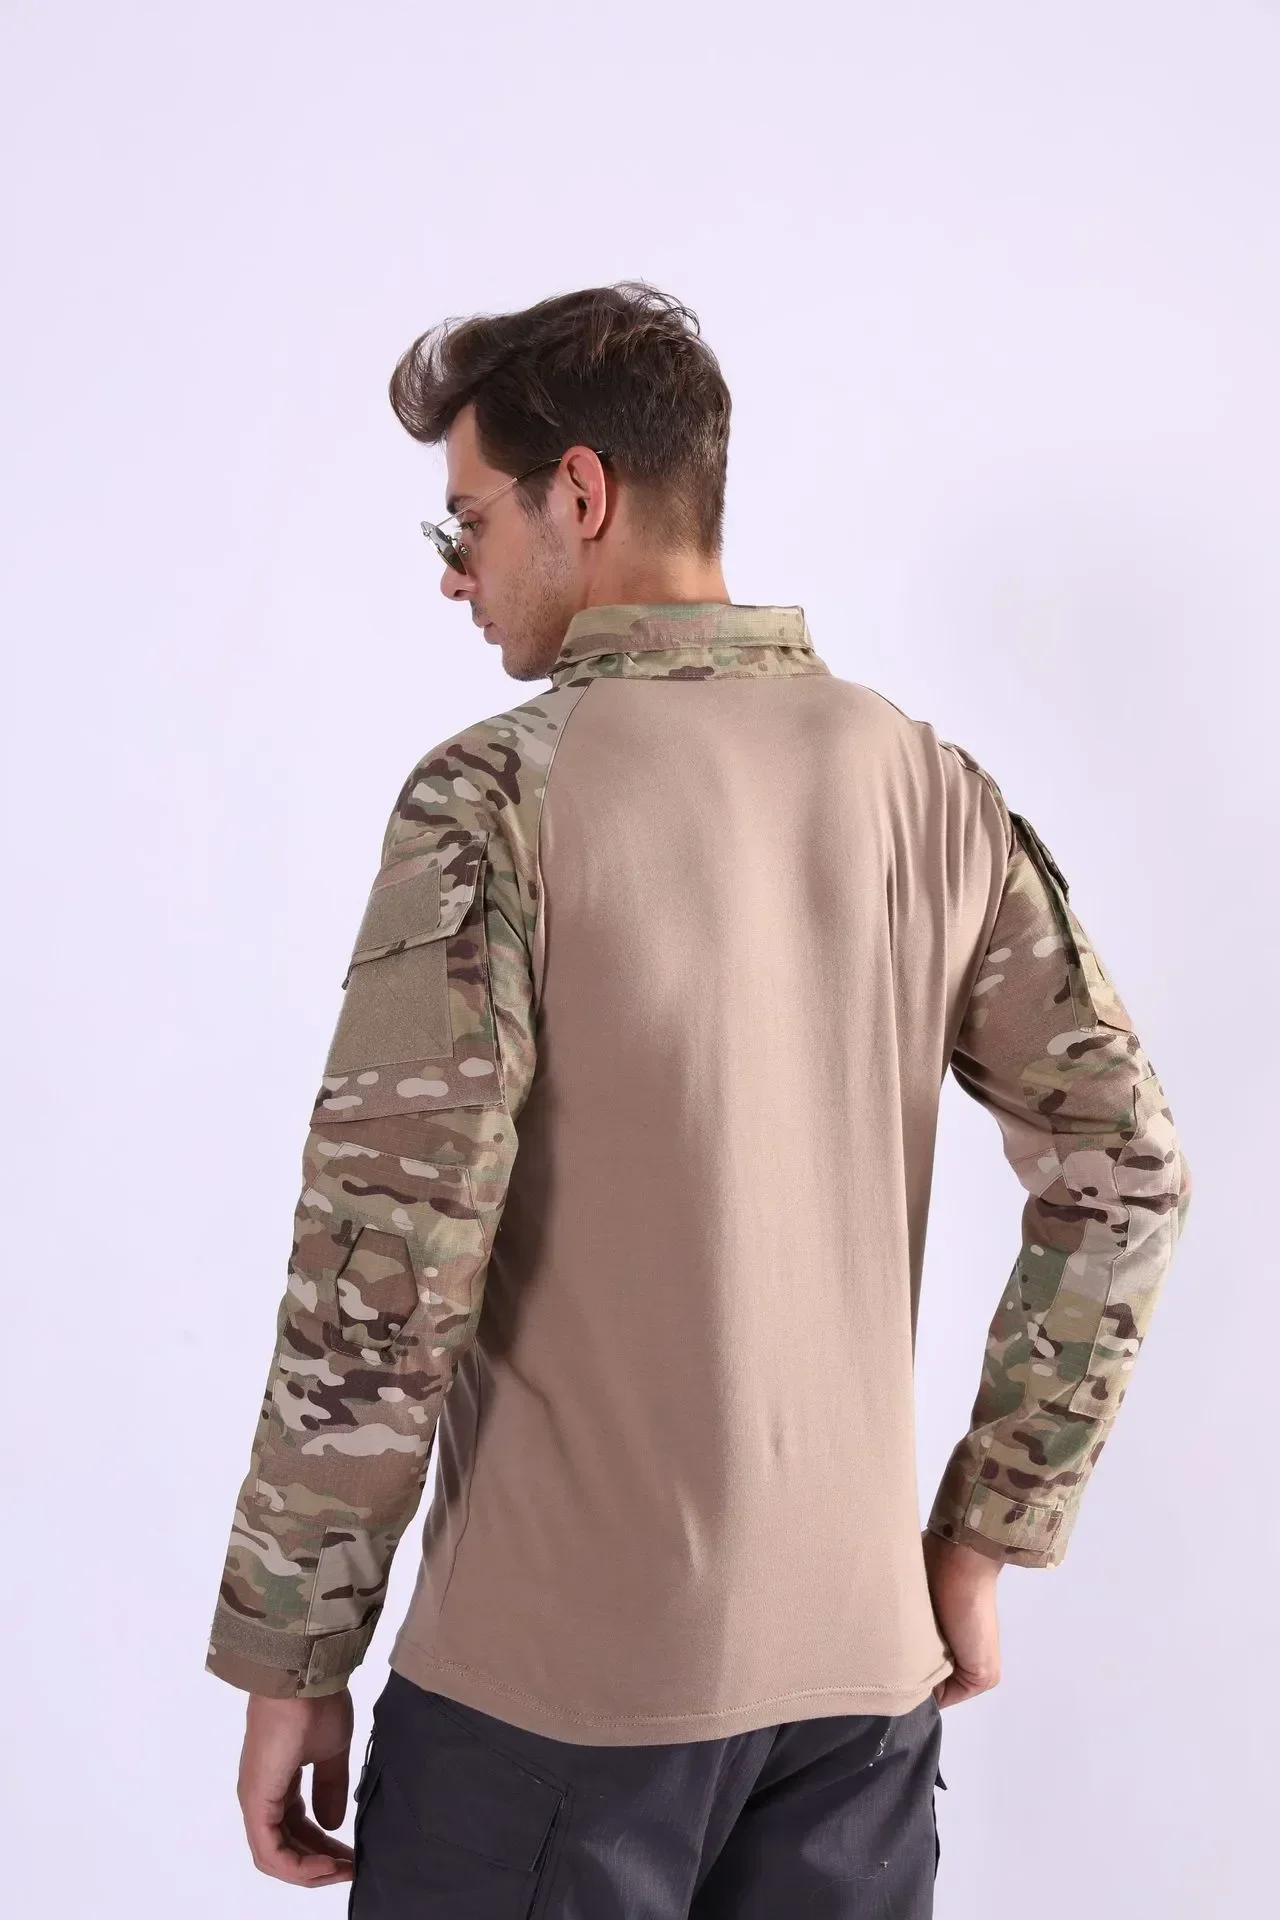 Боевая мужская рубашка Рыбалка Обучение Военная форма Тактическая армейская рубашка с длинным рукавом для мужчин Спортивная одежда